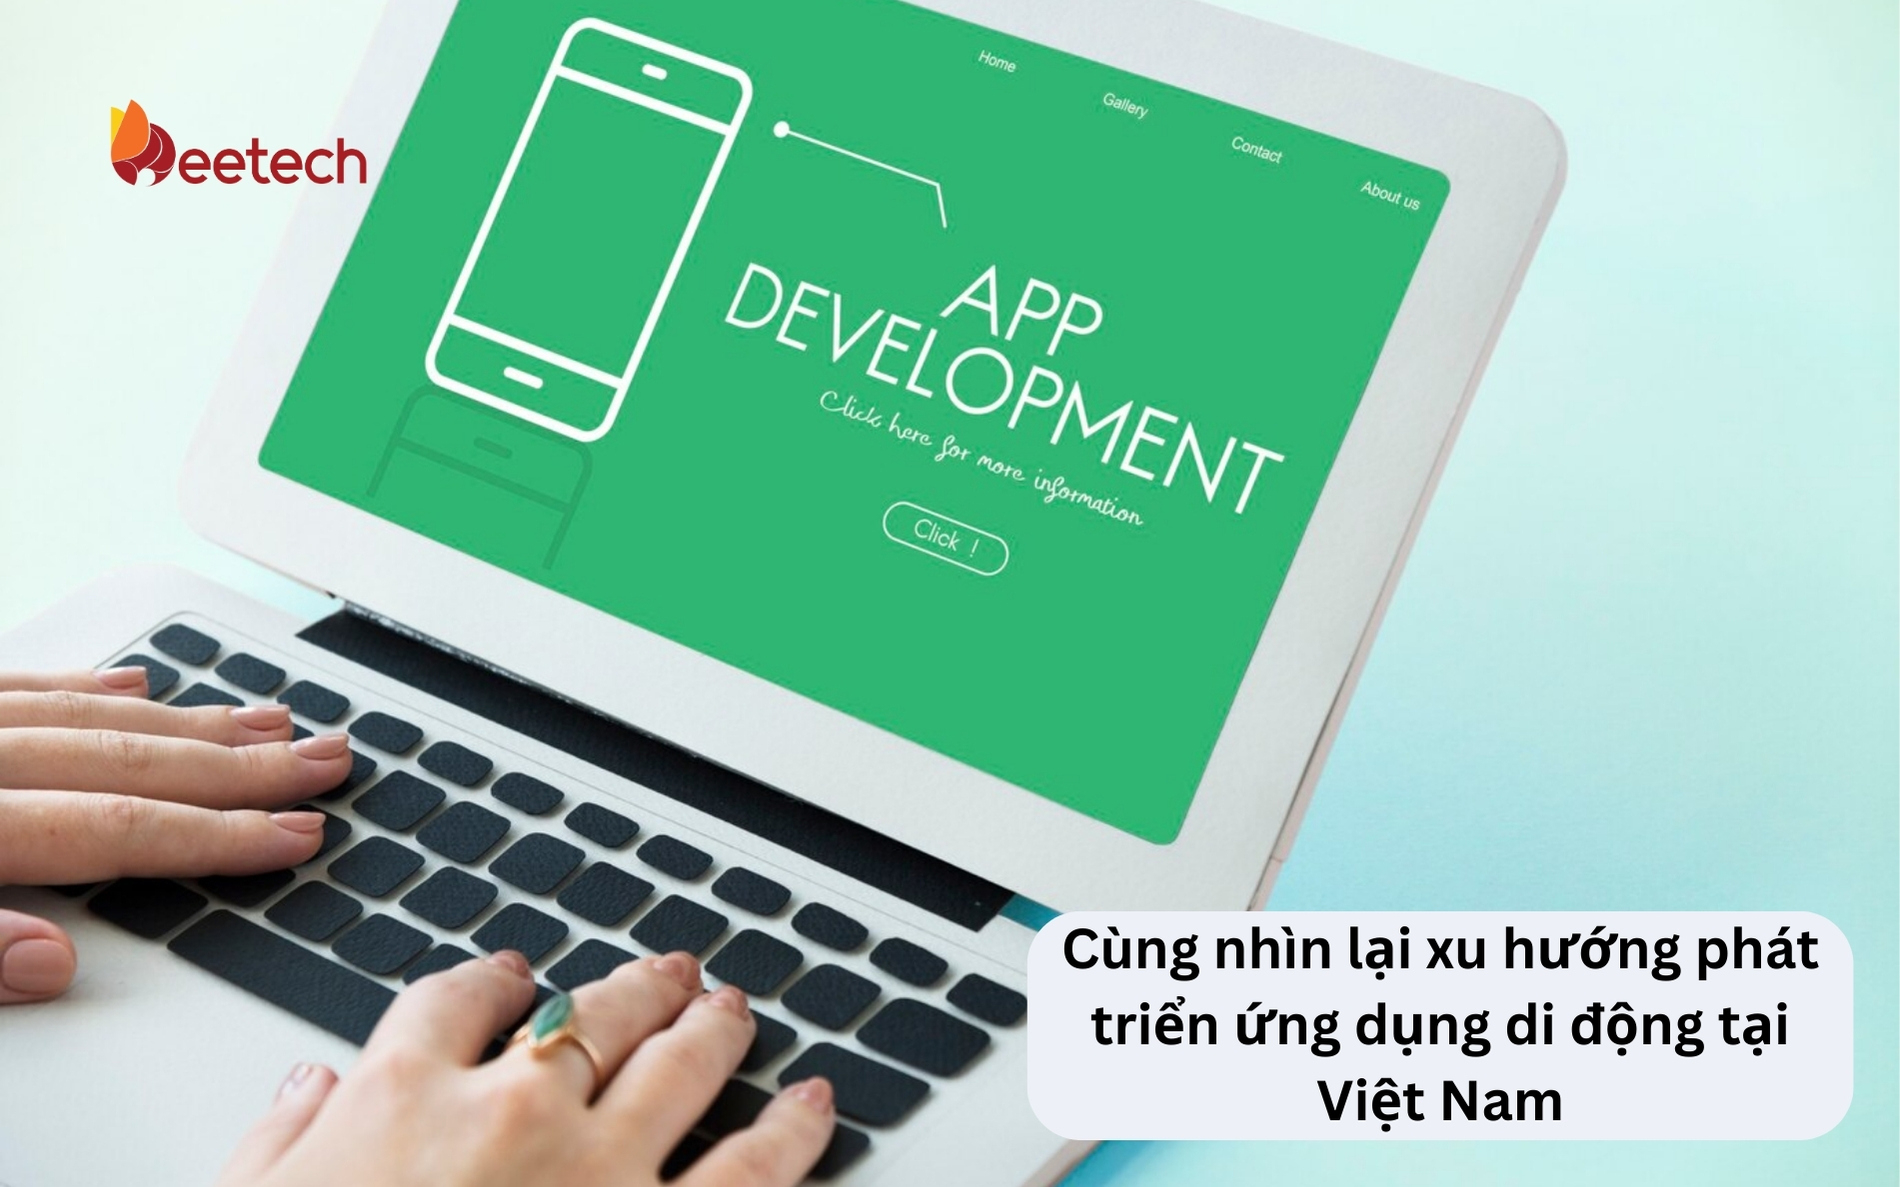 Cùng nhìn lại xu hướng phát triển ứng dụng di động tại Việt Nam